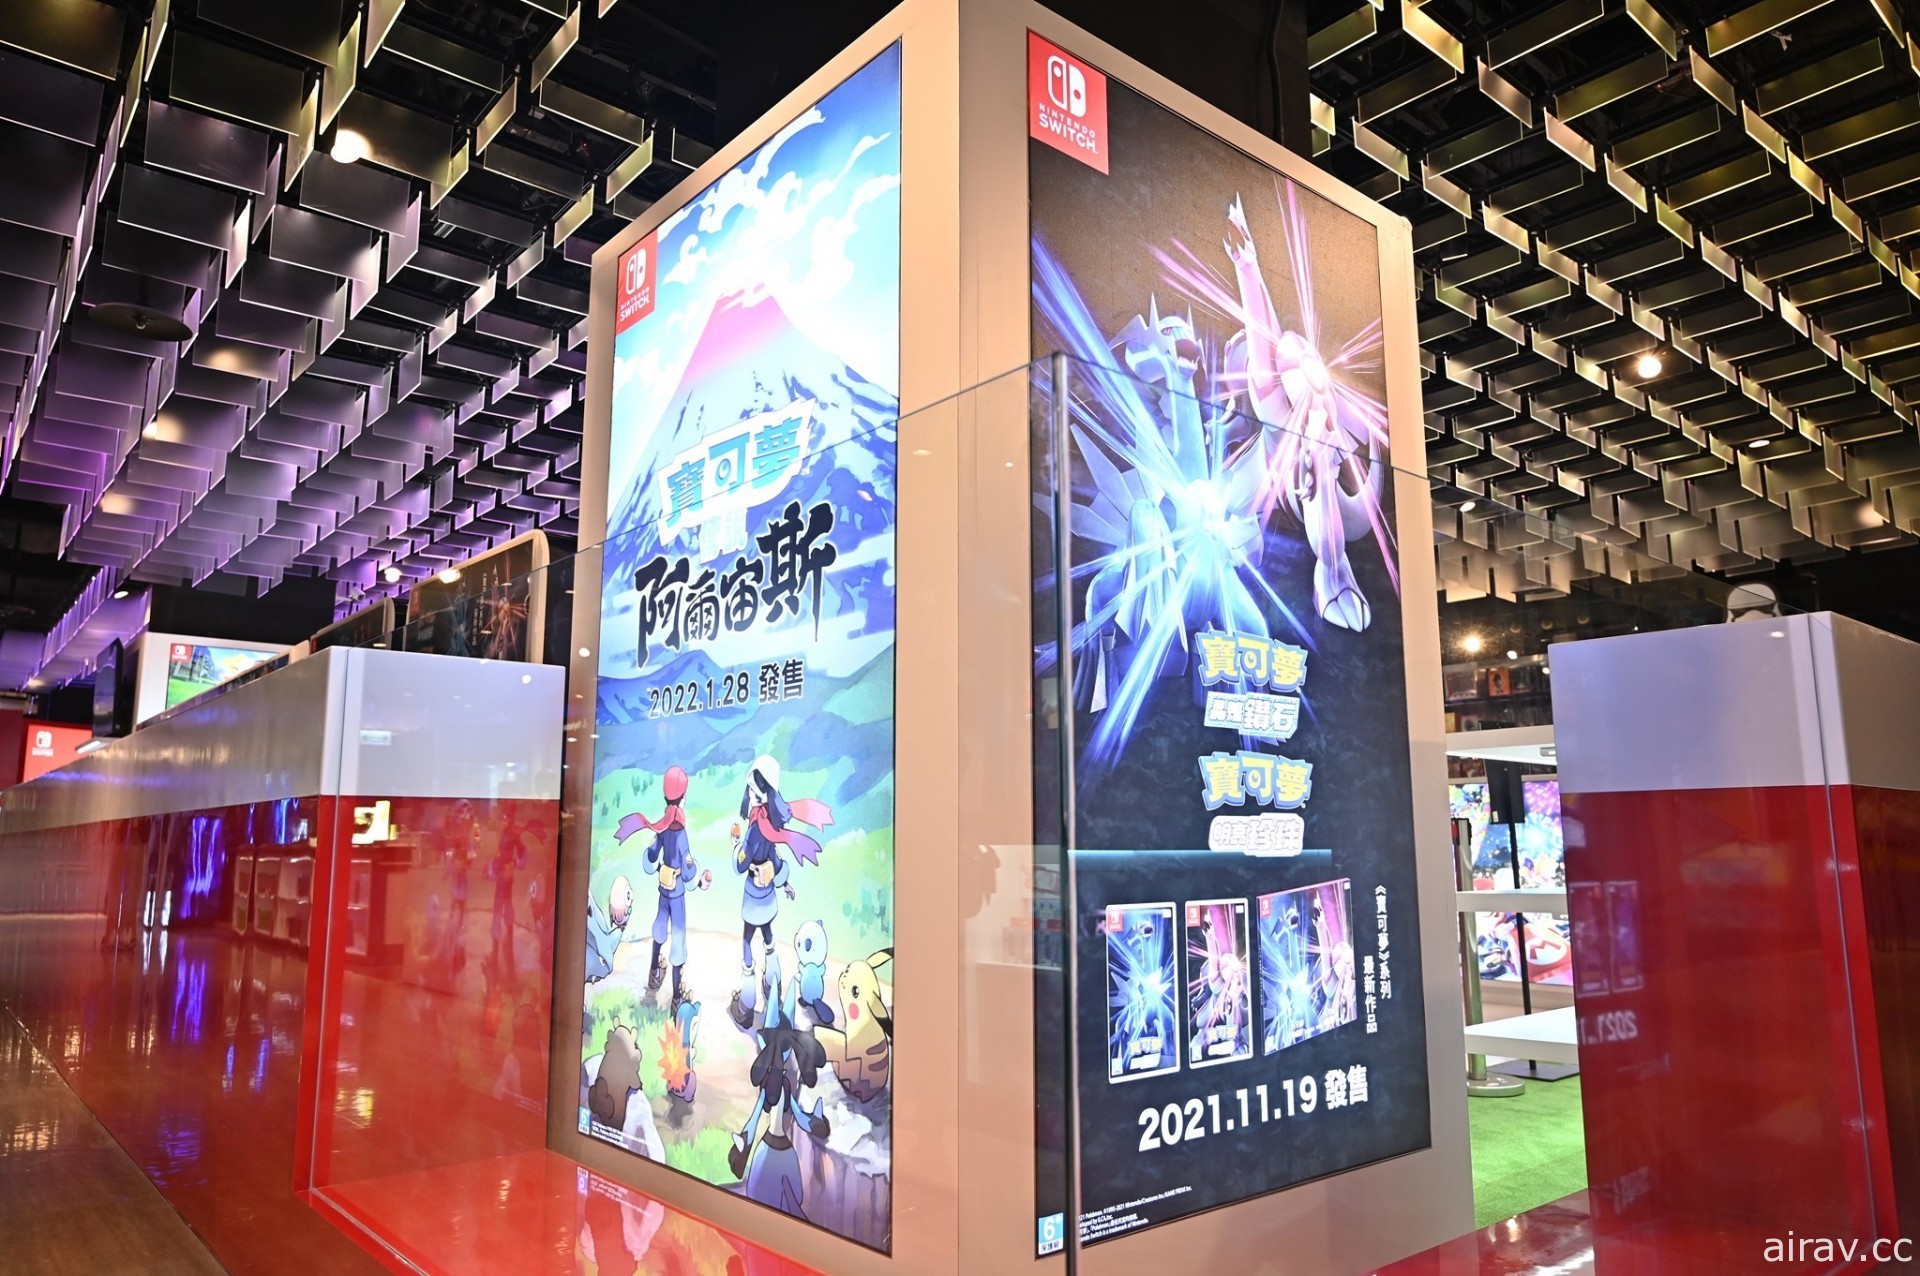 Game 休閒館「任天堂電玩商品旗艦館」於三創開幕 同步設置寶可夢快閃店